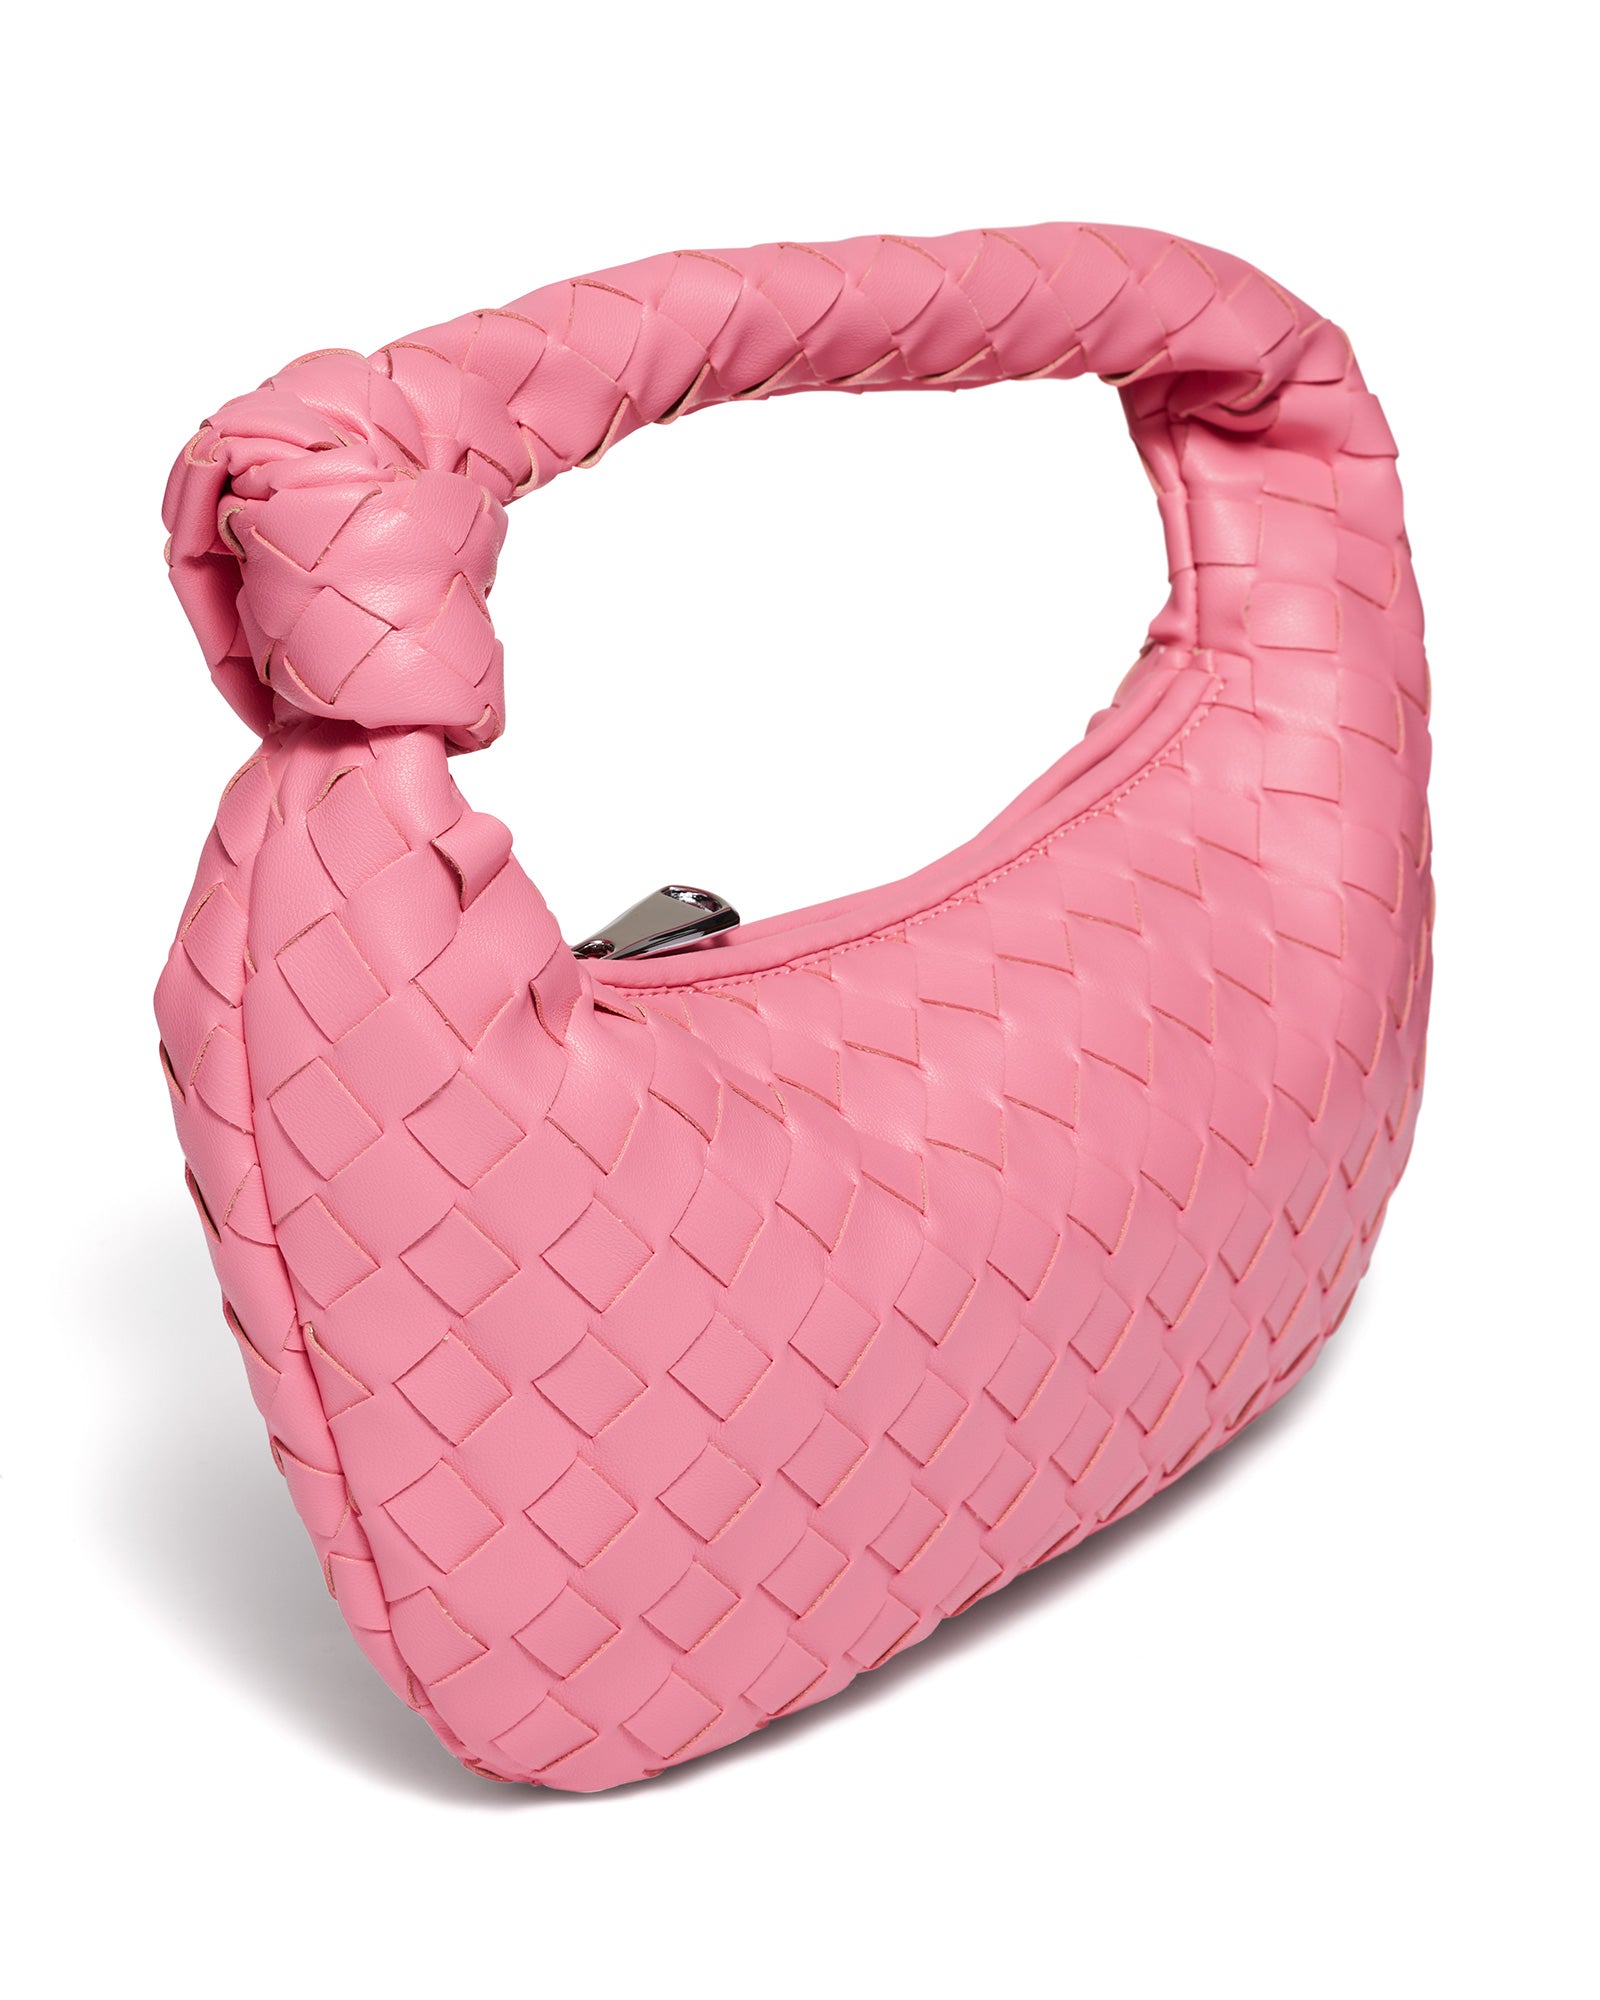 Pink Bag-Chameleon Bag-Therapy